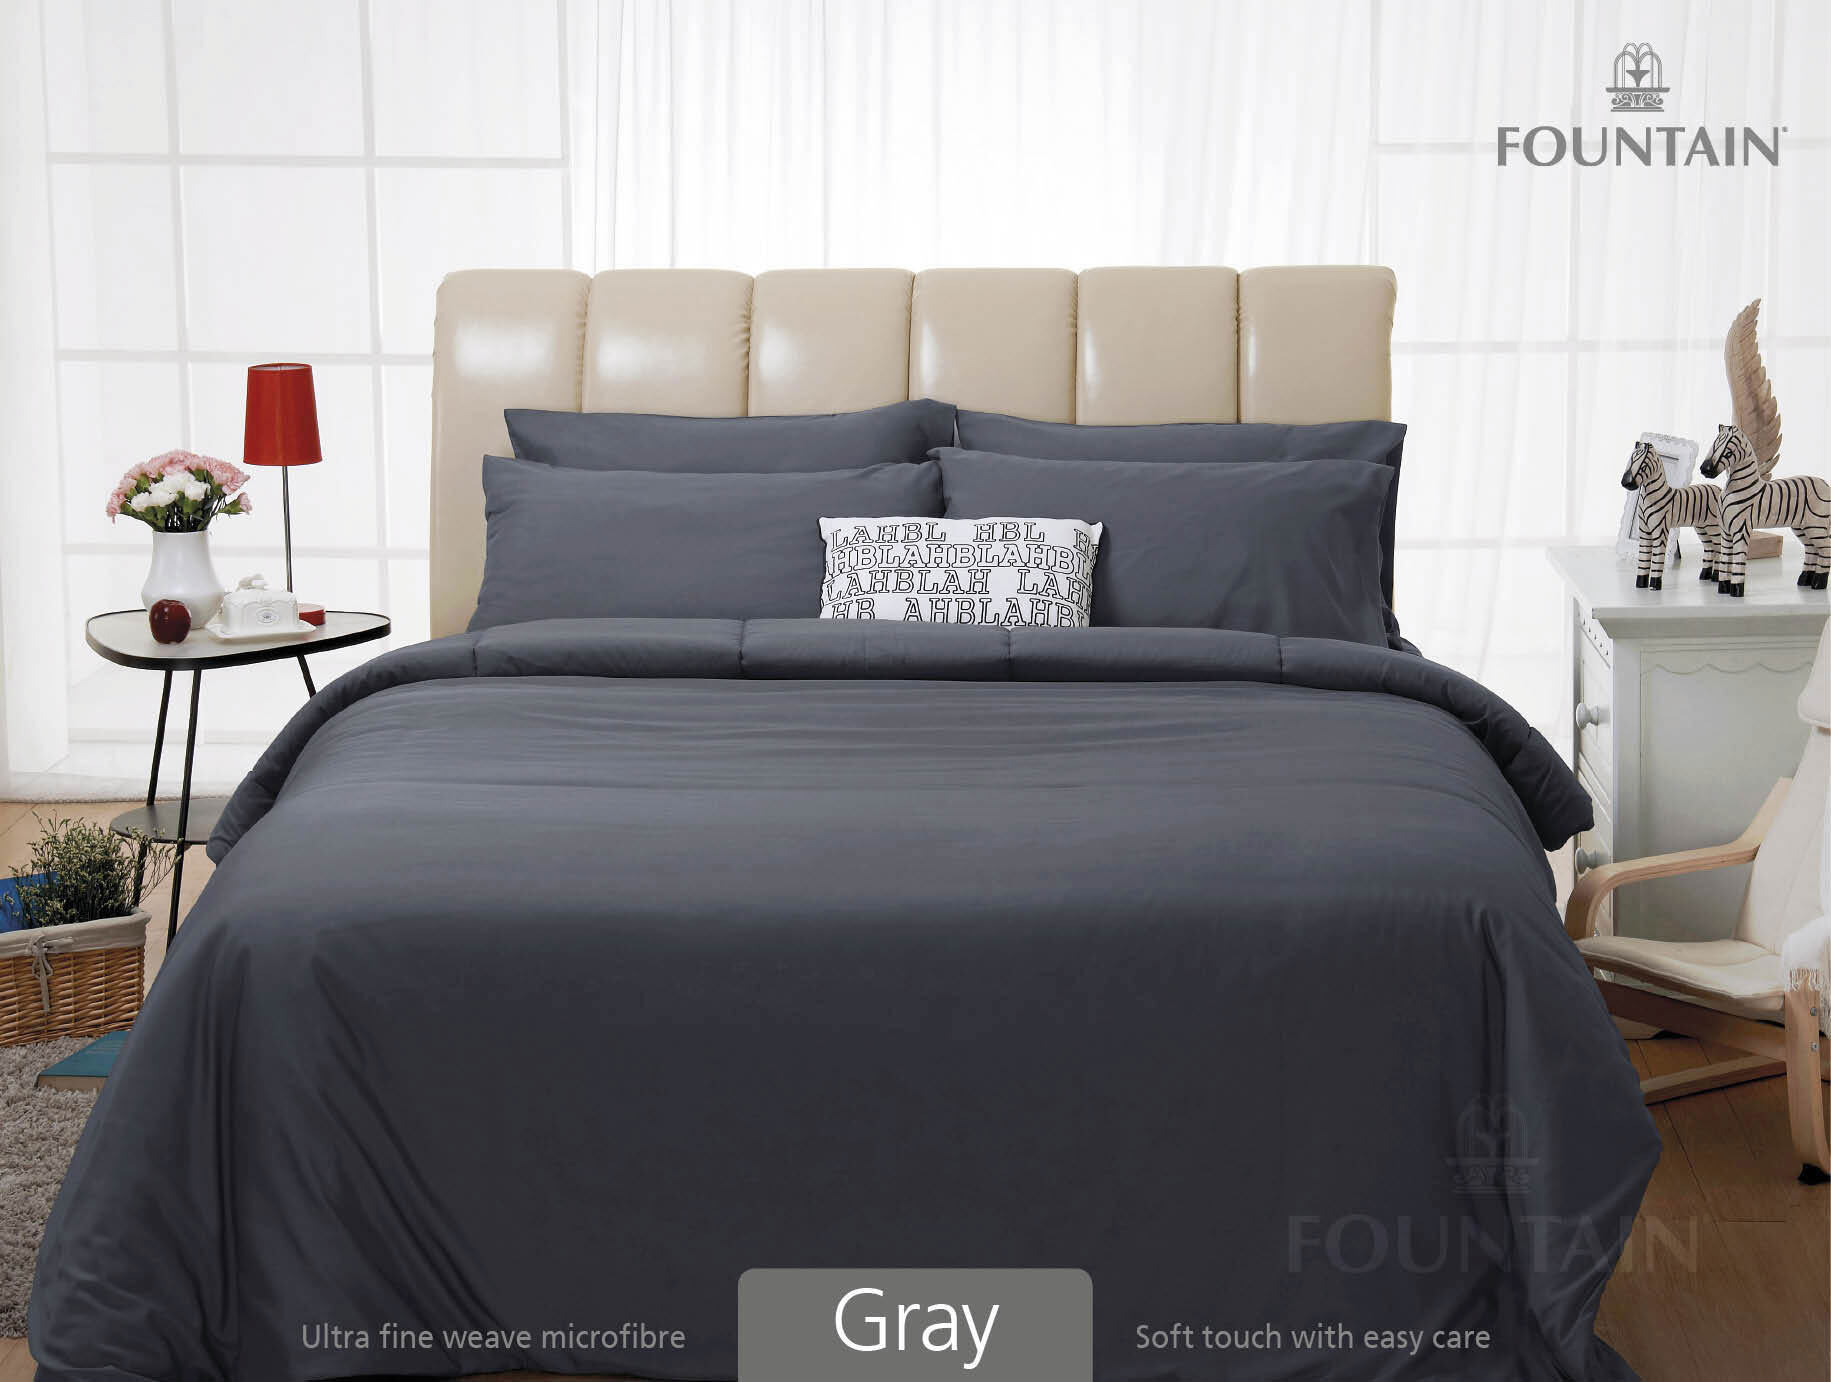 FOUNTAIN ผ้านวม + ชุดผ้าปู ผ้าปู ที่นอน แท้ 100% FTC สีพื้น เขียว Green Gray เทา ขนาด 3.5 5 6ฟุต ชุดเครื่องนอน ผ้านวม ผ้าปูที่นอน wonderful bedding  สี → Gray2ขนาดสินค้า 5 ฟุต